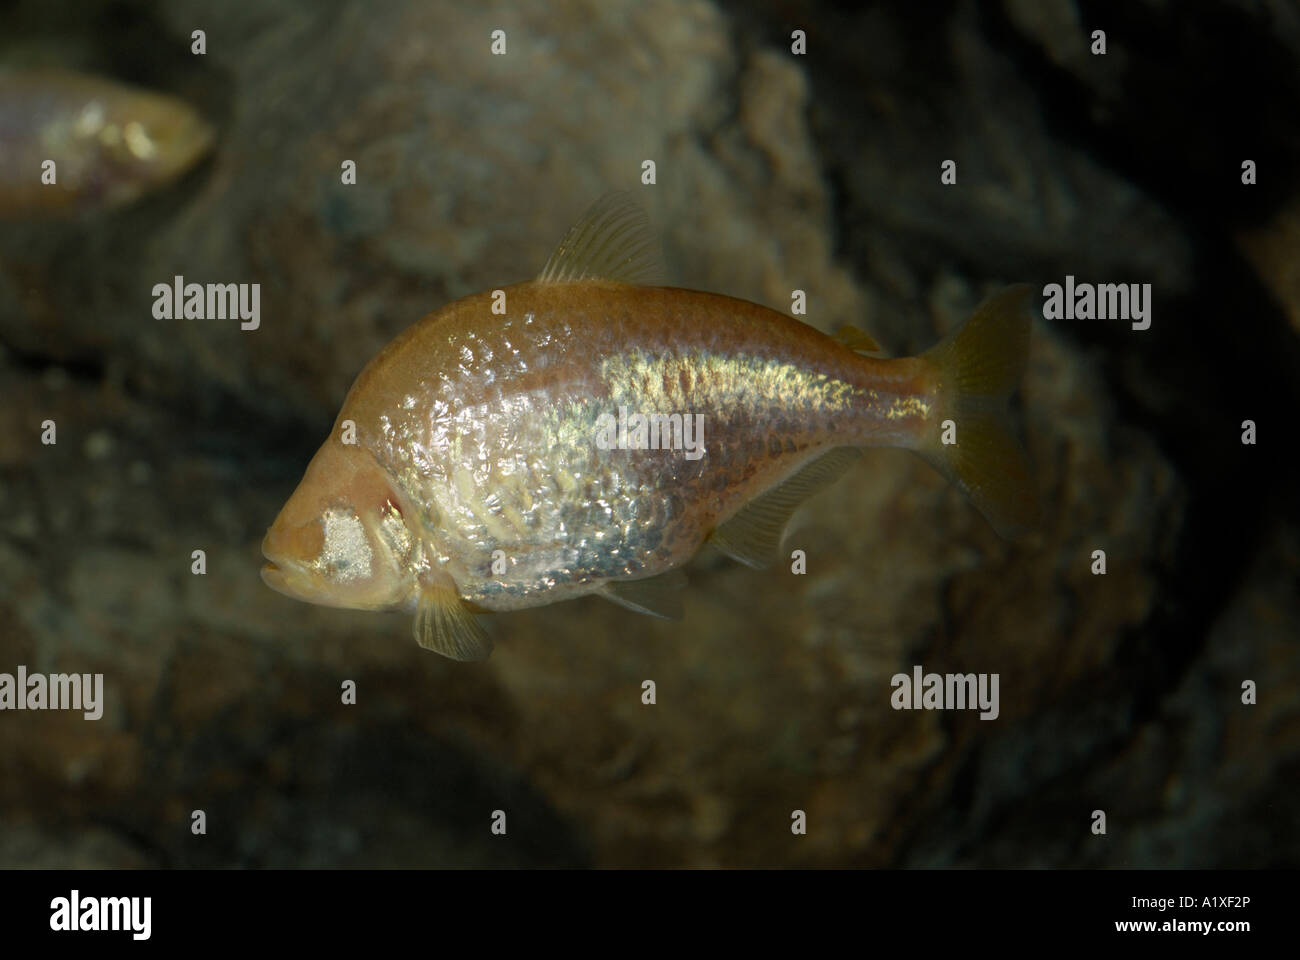 Cueva ciega, pez Astyanax mexicanus o Astyanax characidae Foto de stock